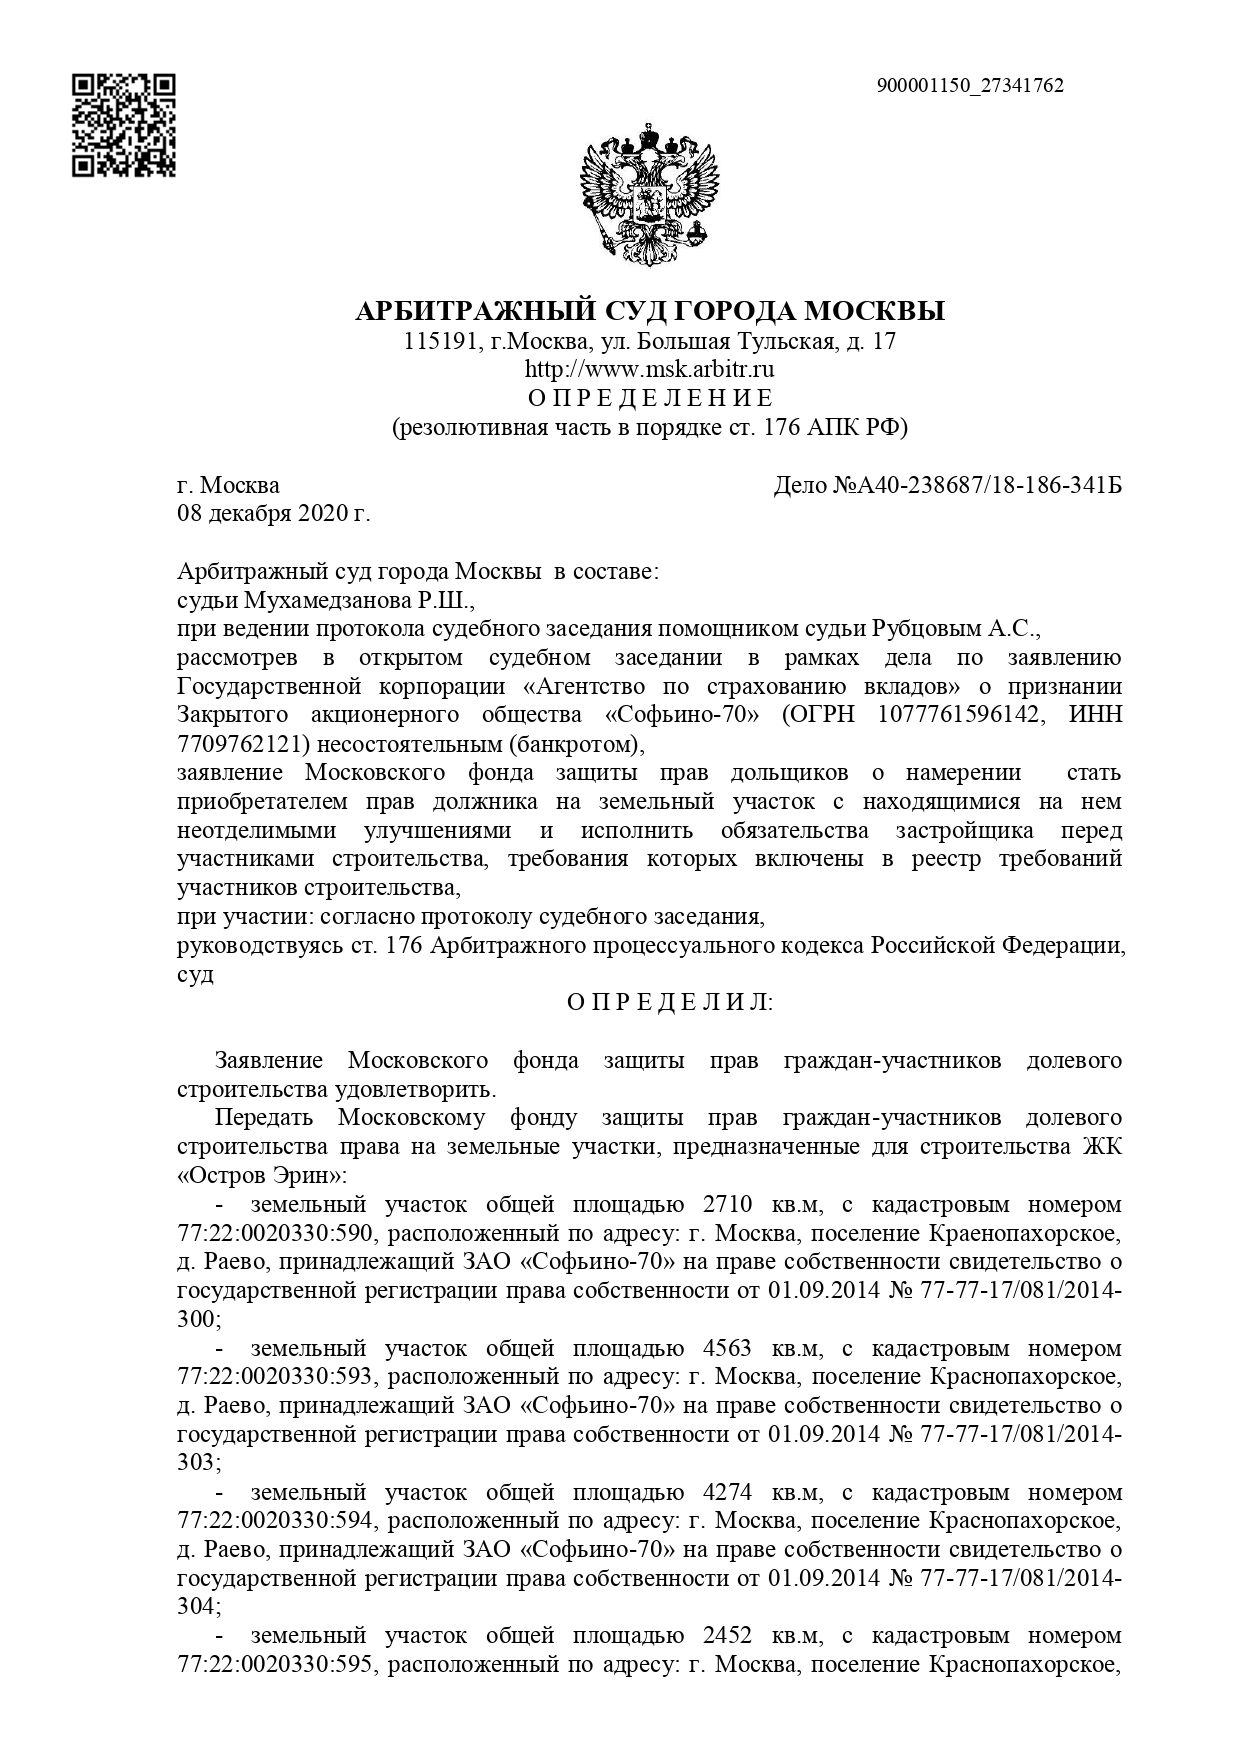 Определение Арбитражного суда города Москвы от 08.12.2020г.